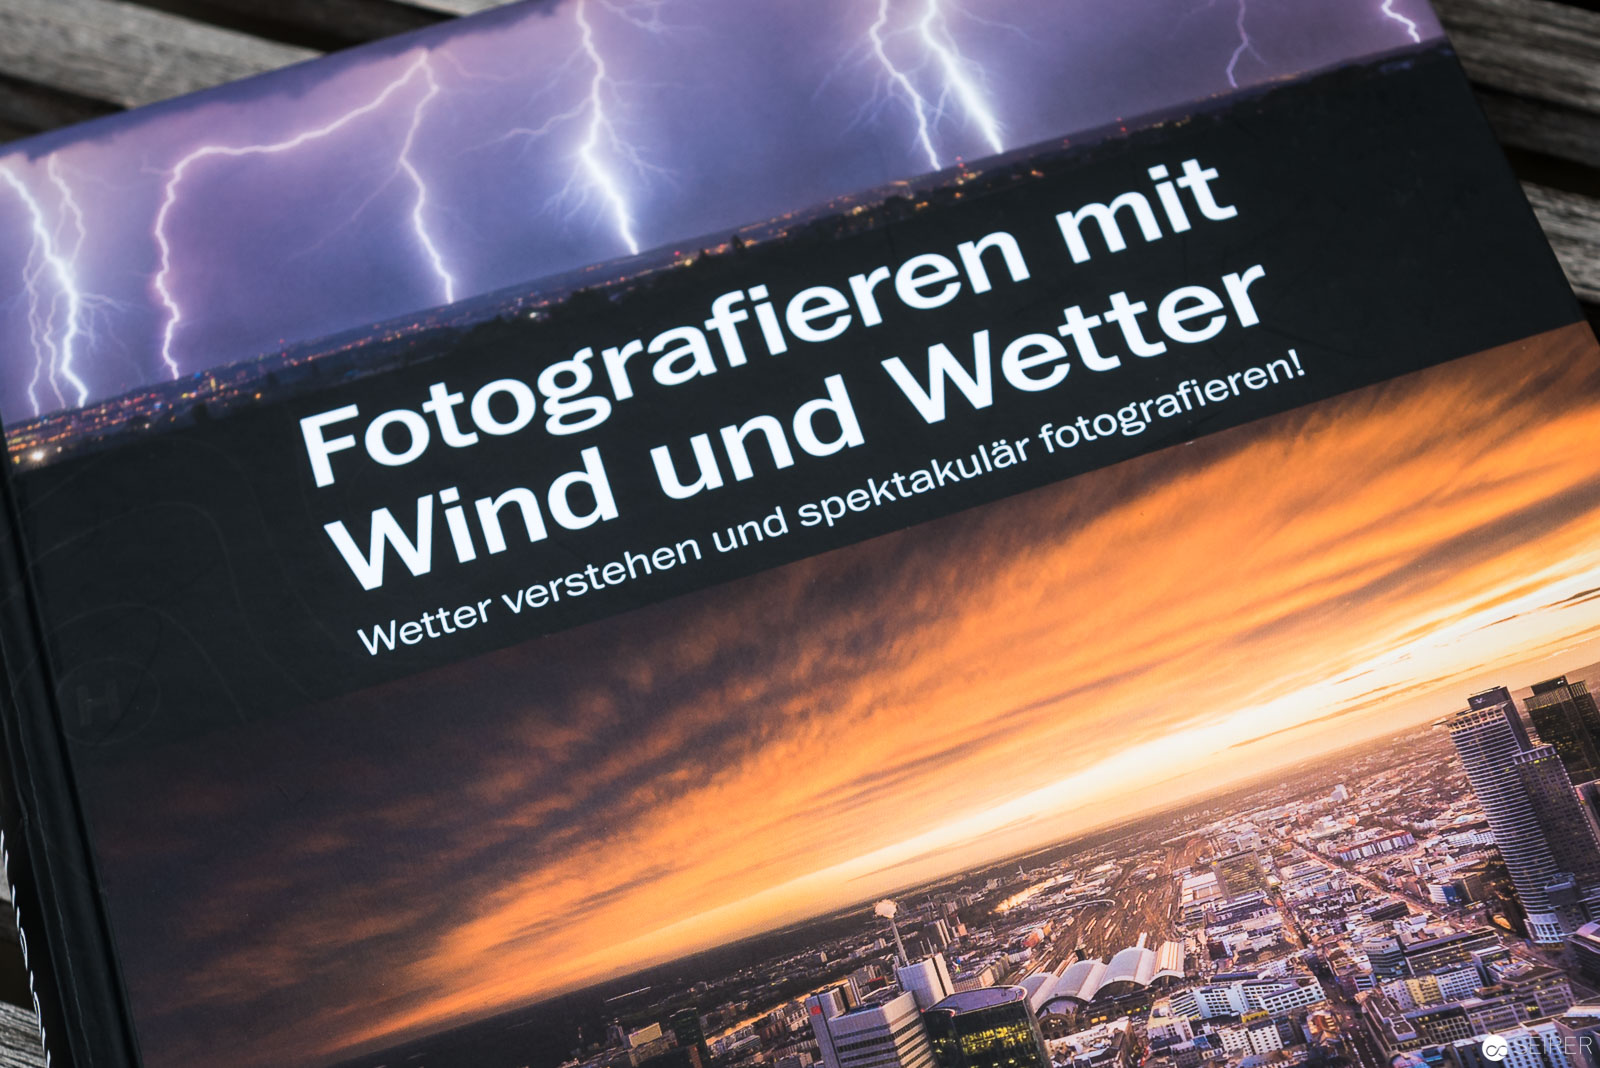 20170414 120544 Werner Fotografieren Mit Wind Und Wetter Rheinwerk 4555 2